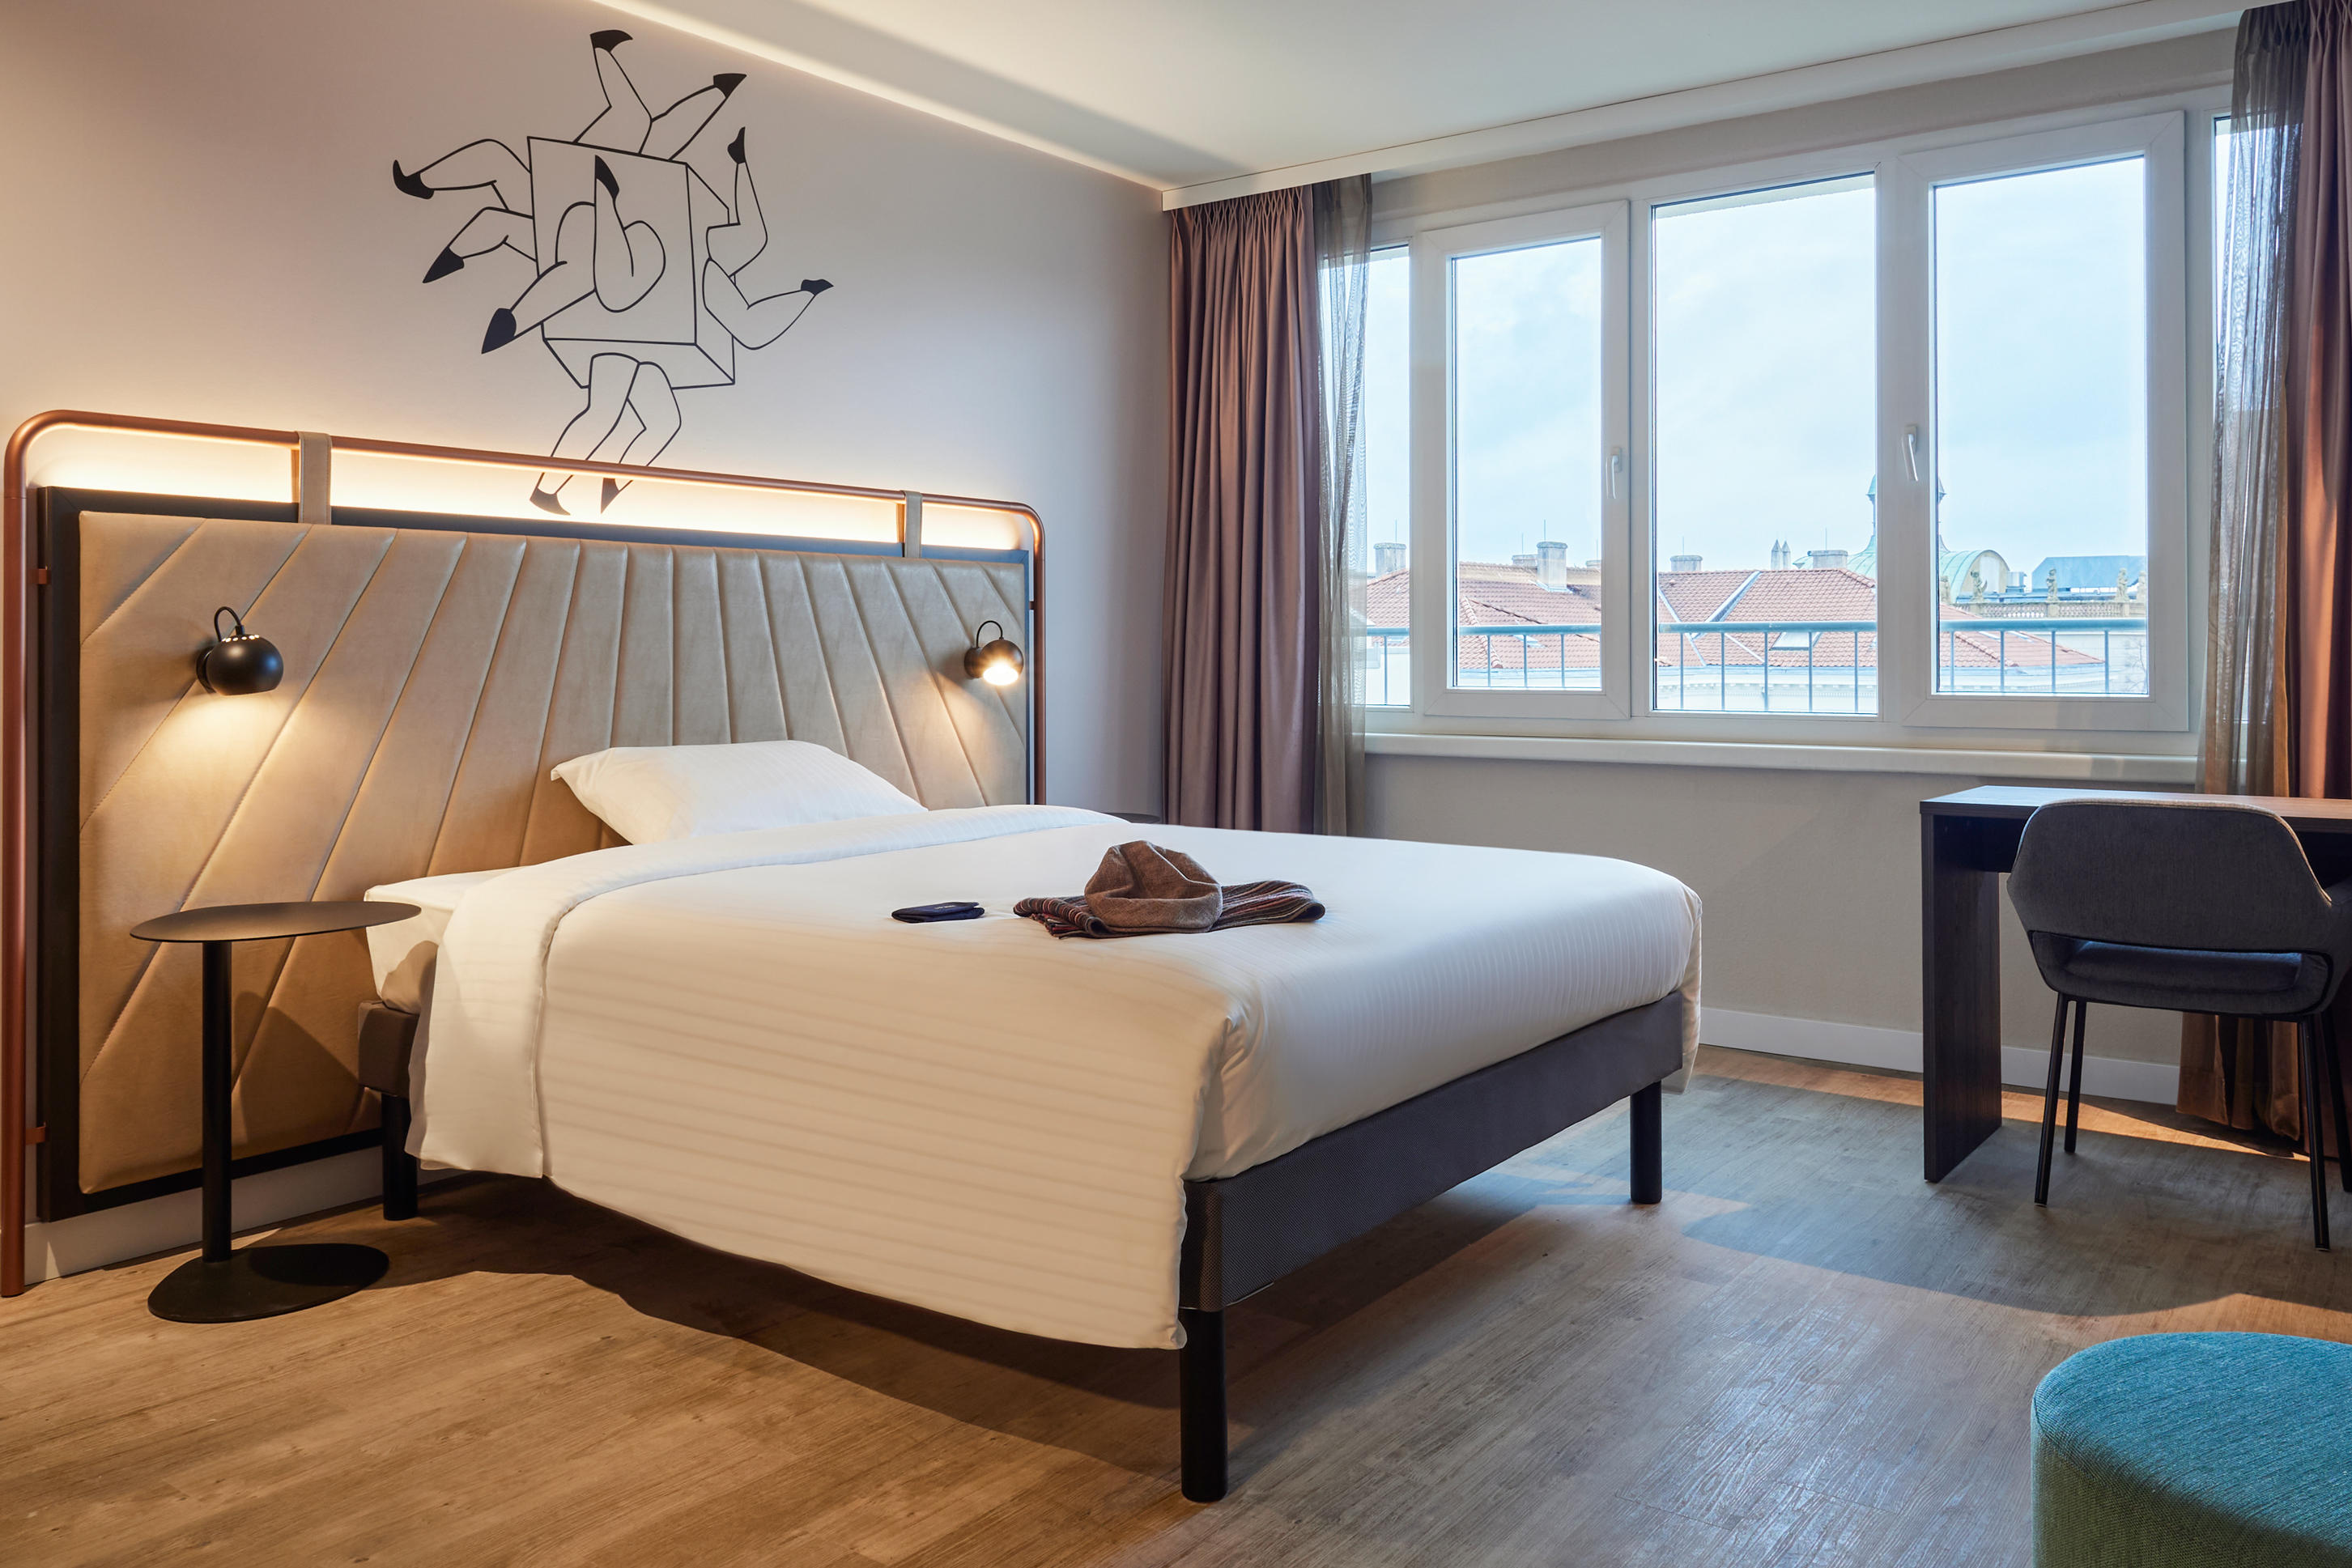 gemütlichen Doppelbett Sweet Bed by ibis Styles 160x200cm in Queen-Size-Größe